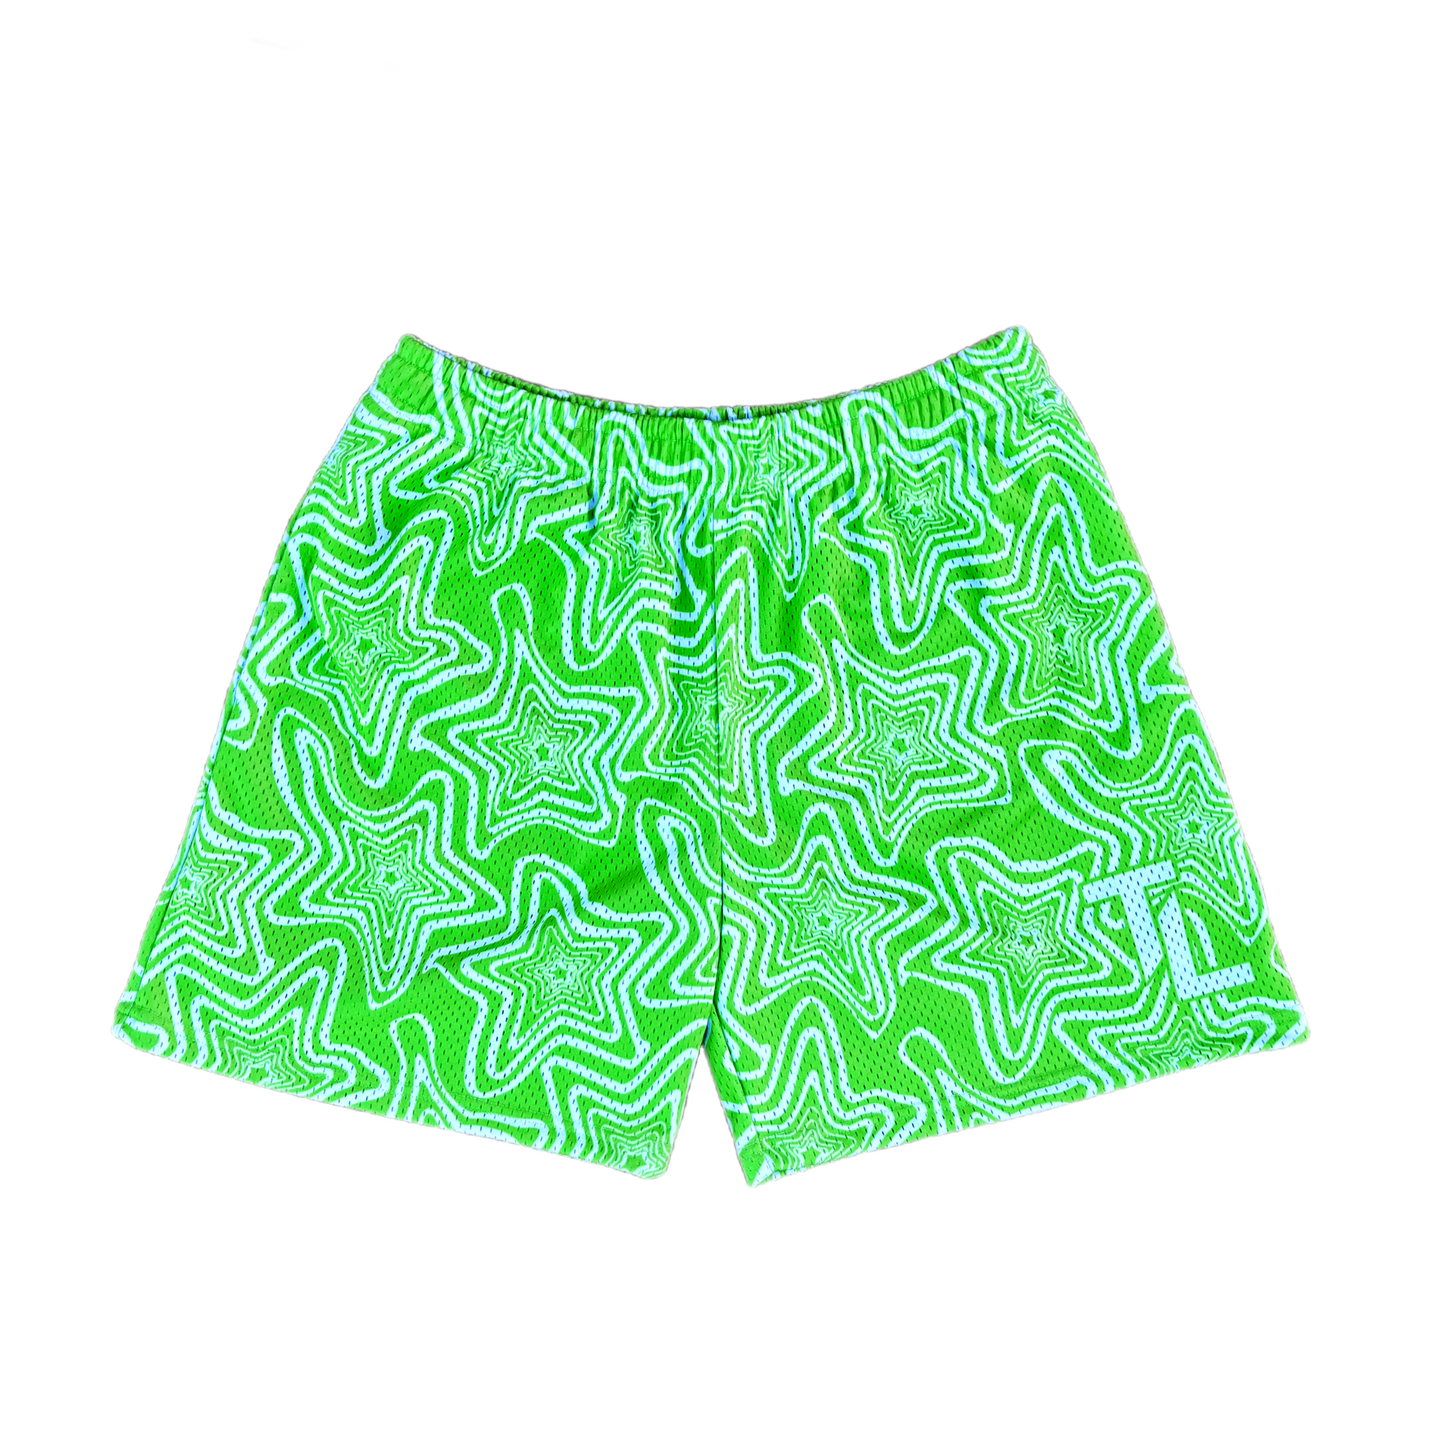 Green Star Shorts